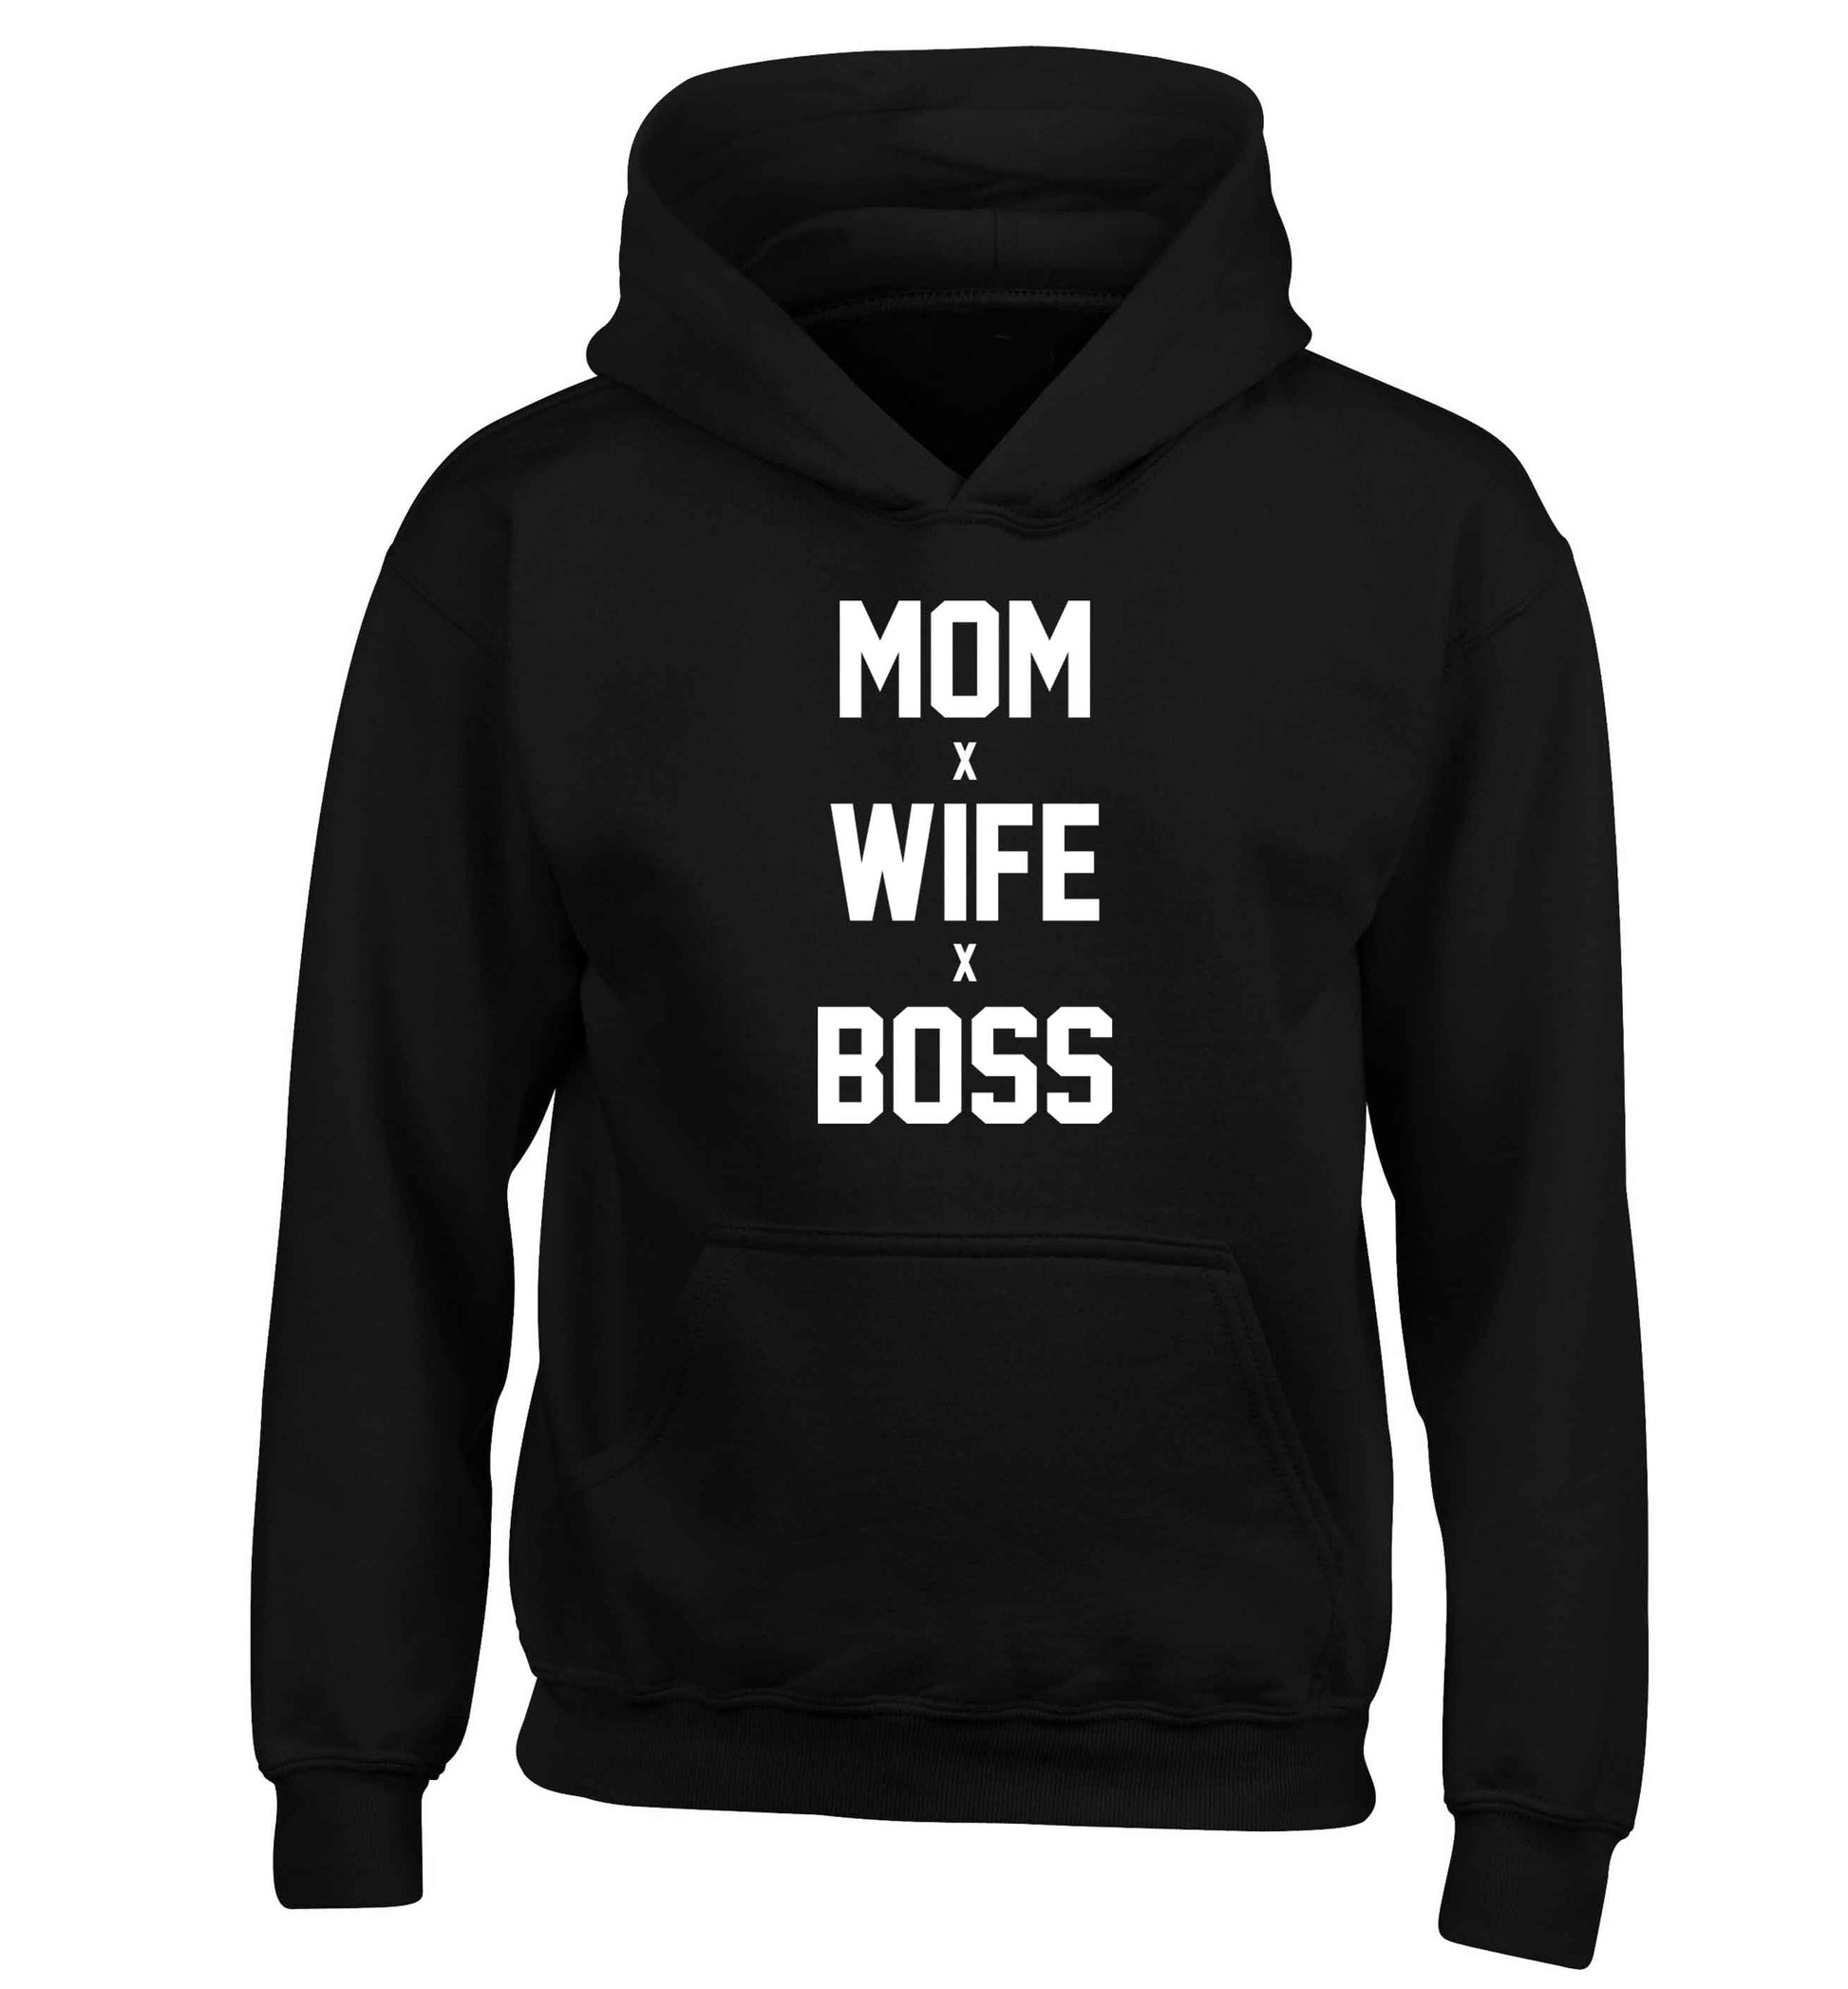 Mum wife boss children's black hoodie 12-13 Years